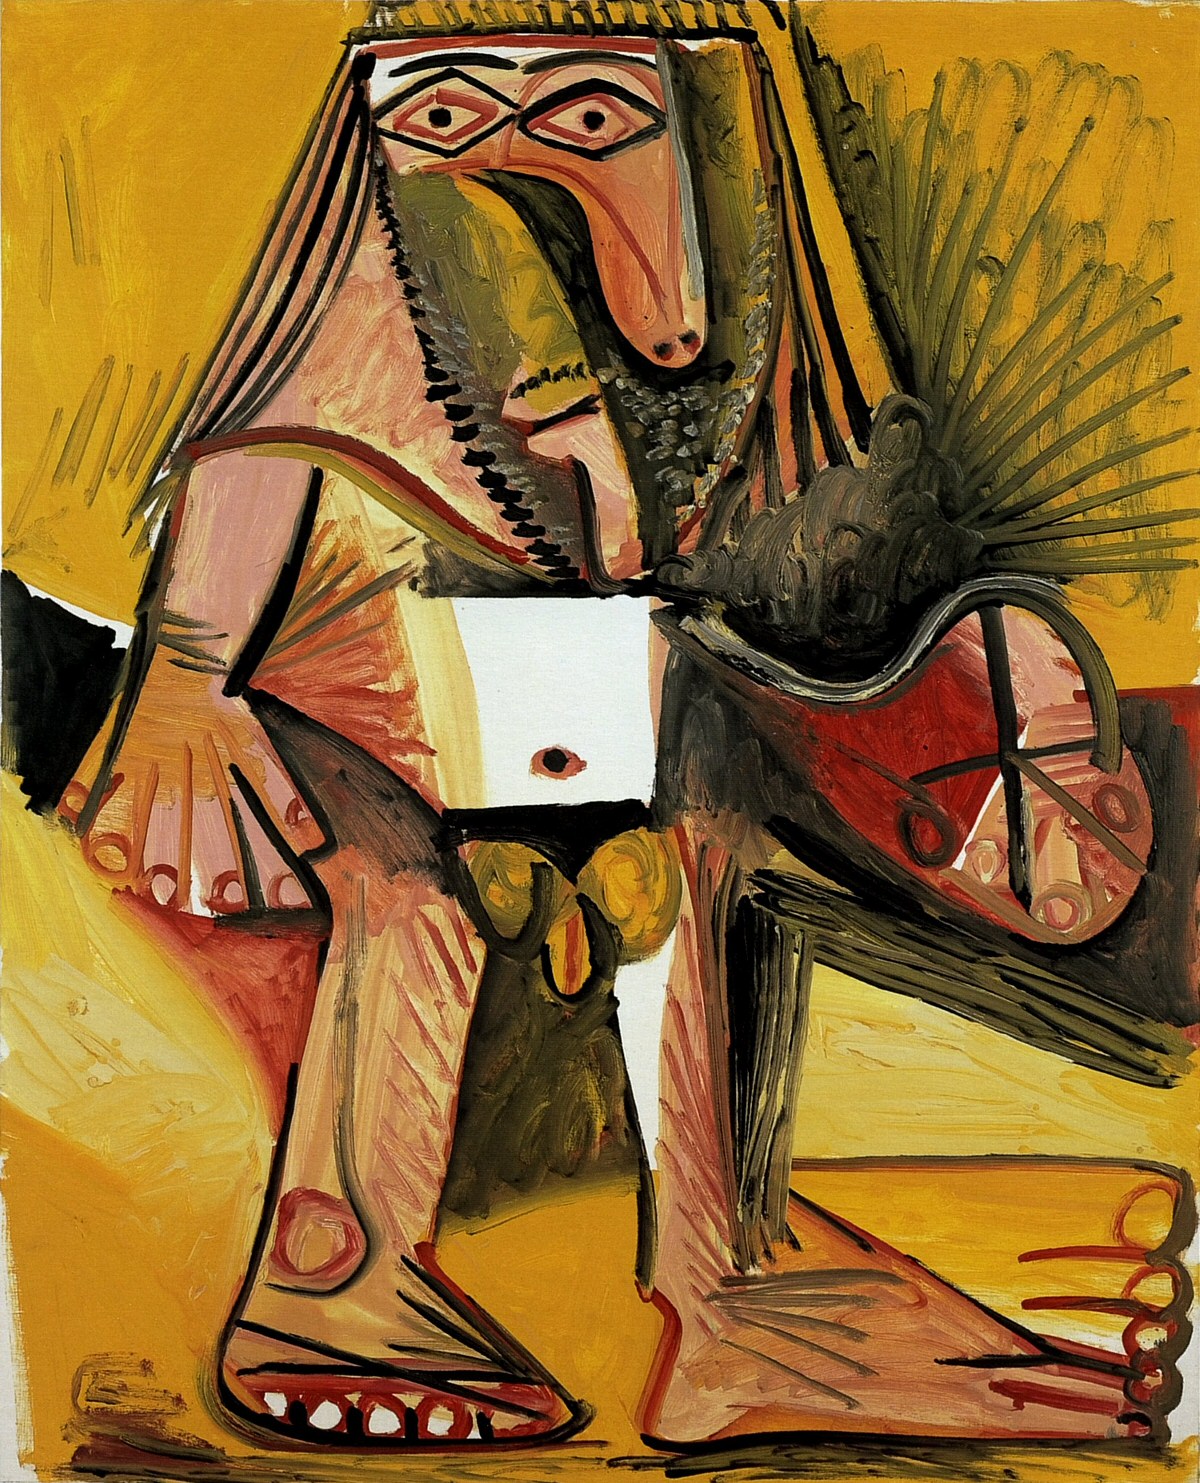 Пабло Пикассо. "Стоящий обнажённый мужчина". 1971.